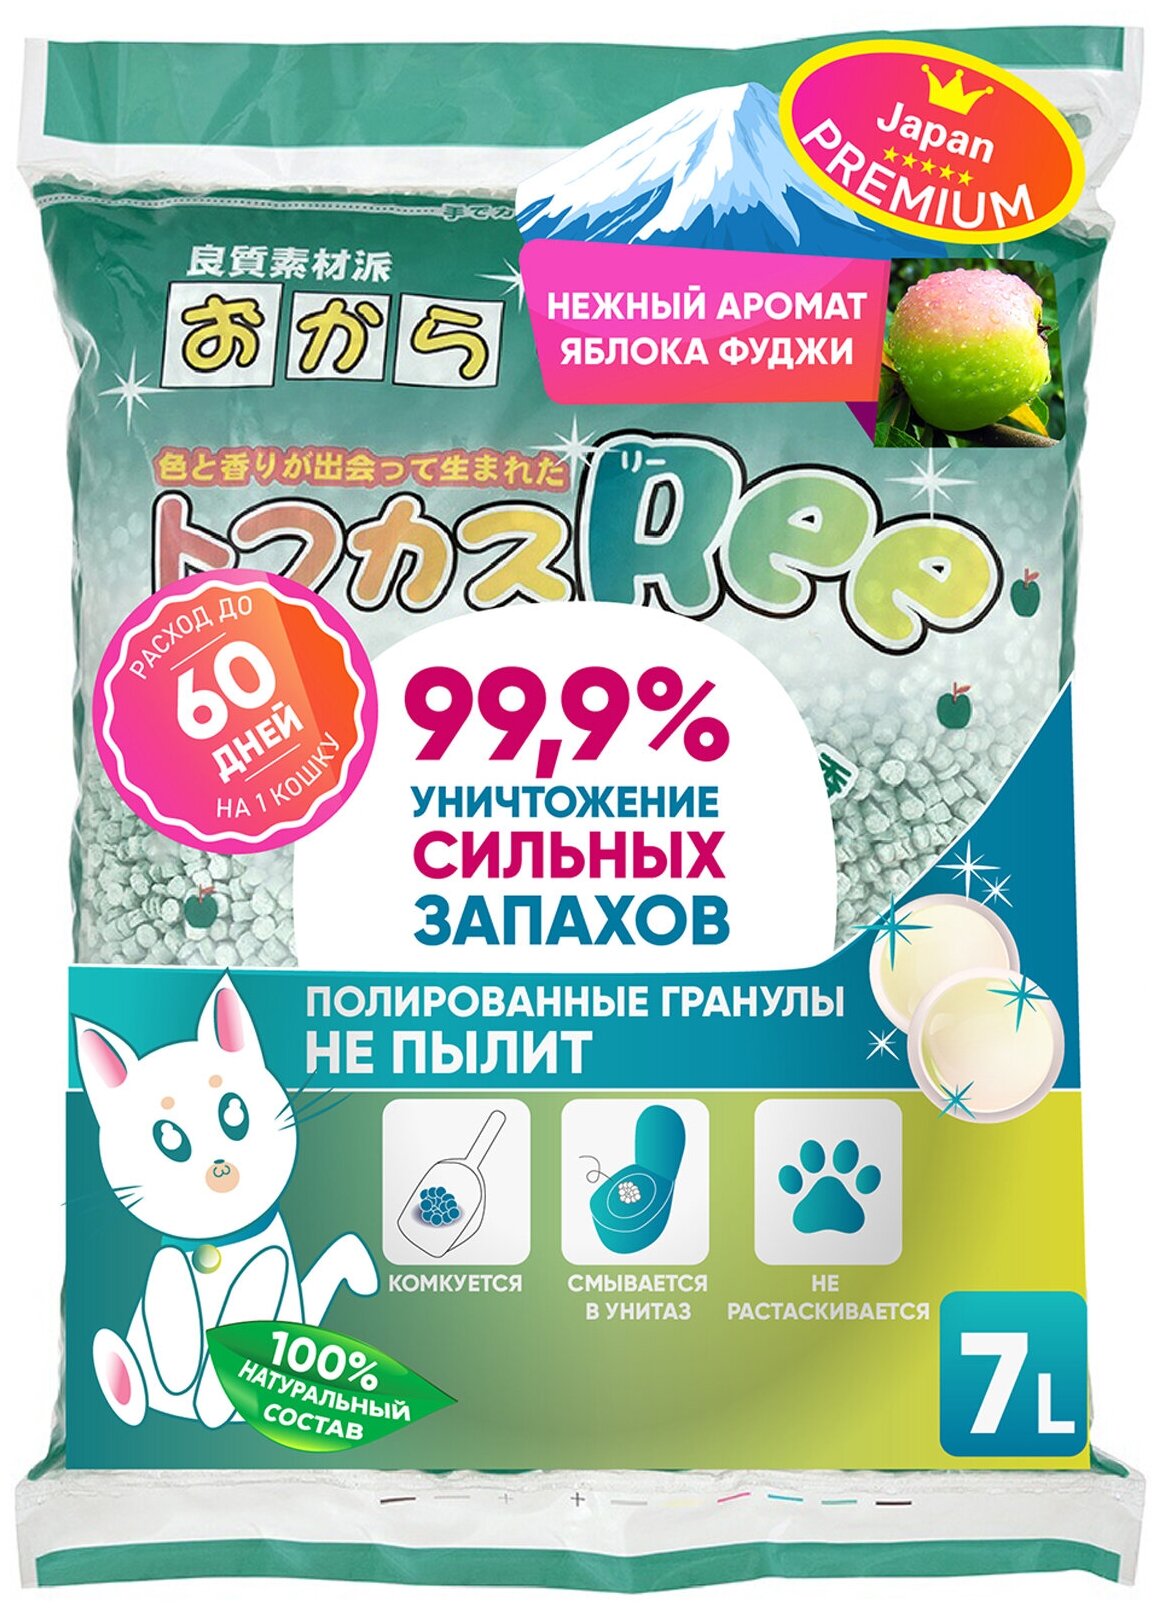 Наполнитель для кошачьего туалета Japan Premium Pet Тофу с натуральным яблоком, комкуется и смывается в туалет, 7 литров